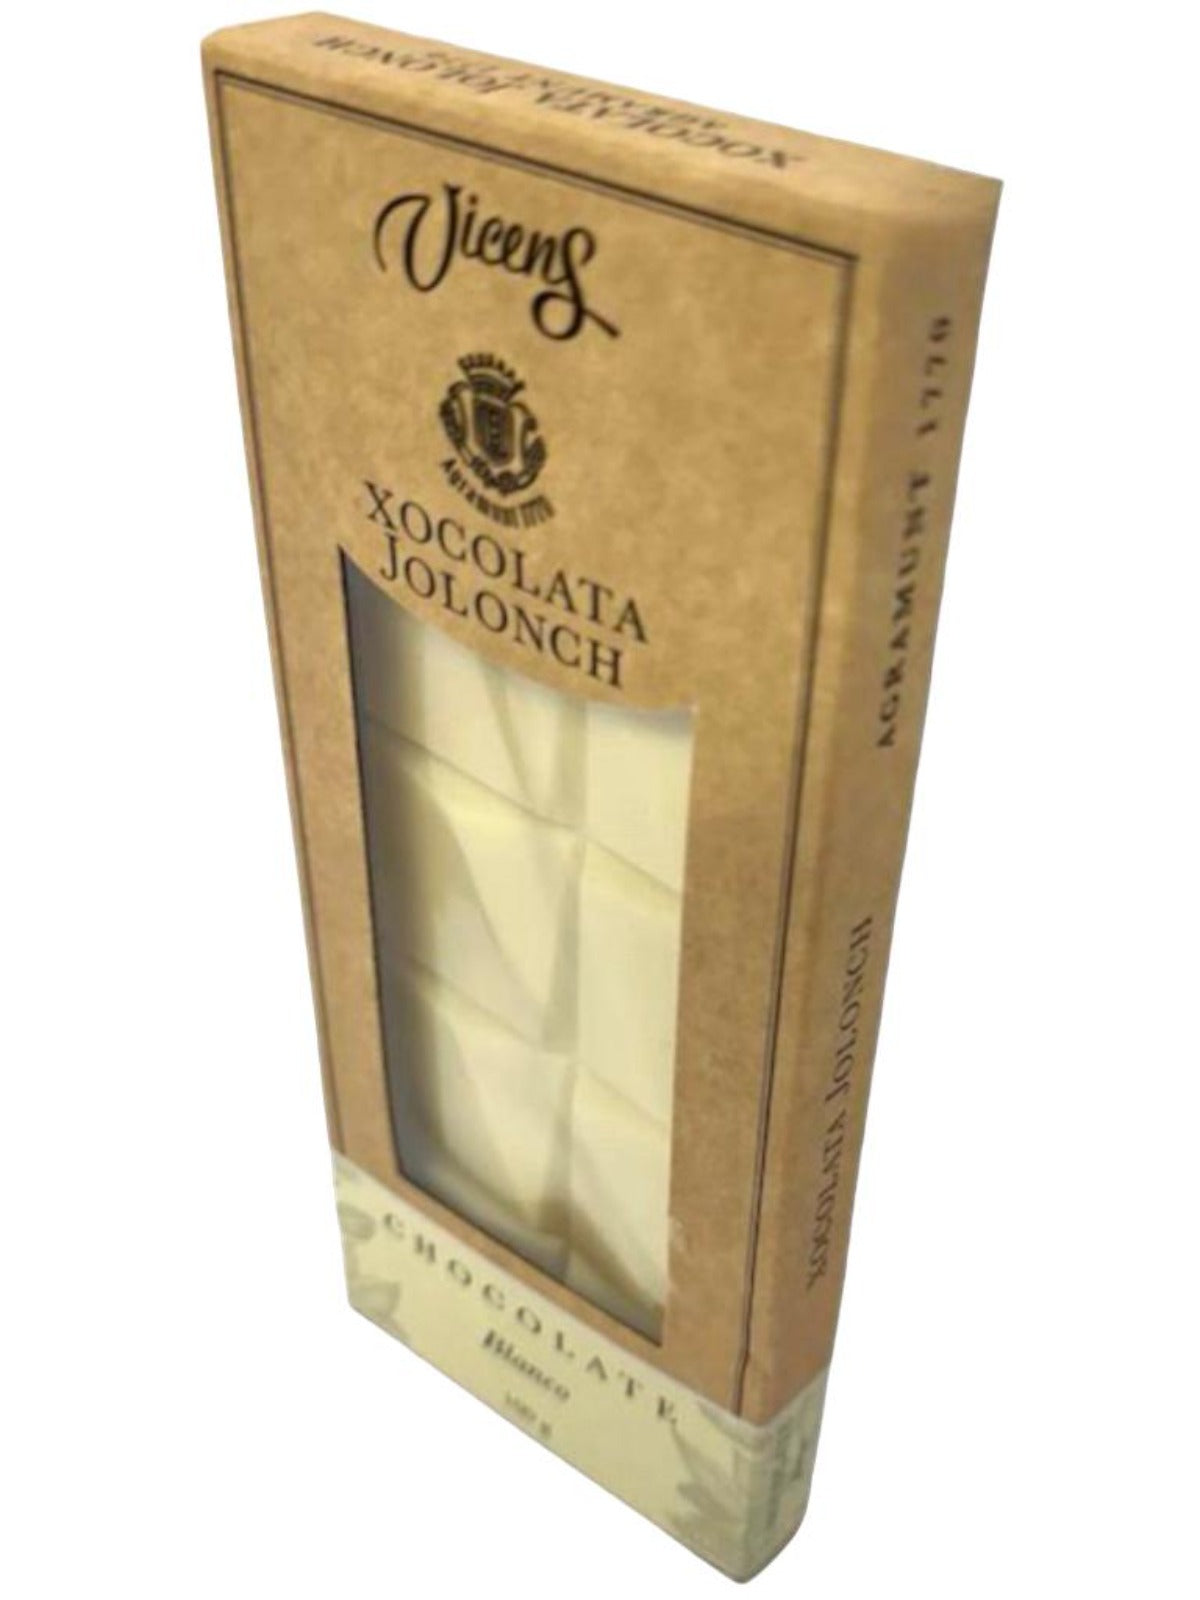 Vicens Xocolata Jolonch Chocolate Blanco Spanish White Chocolate 100g Best Before November 2024